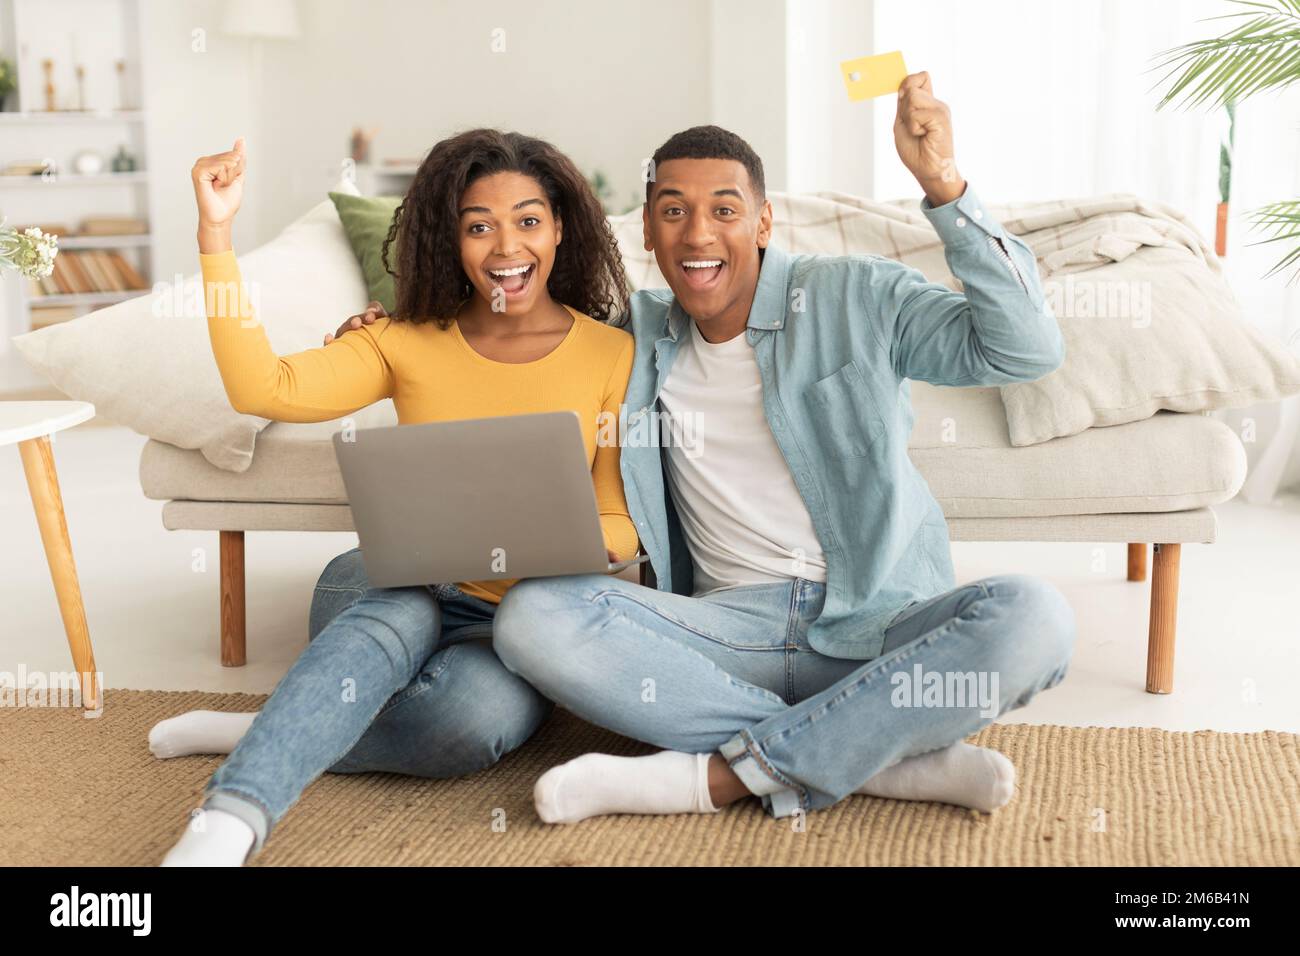 Lachender afroamerikanischer Millennials umarmt eine Frau, benutzt Laptop, Kreditkarte, hebt die Hand, macht Sieg und Erfolg Geste Stockfoto